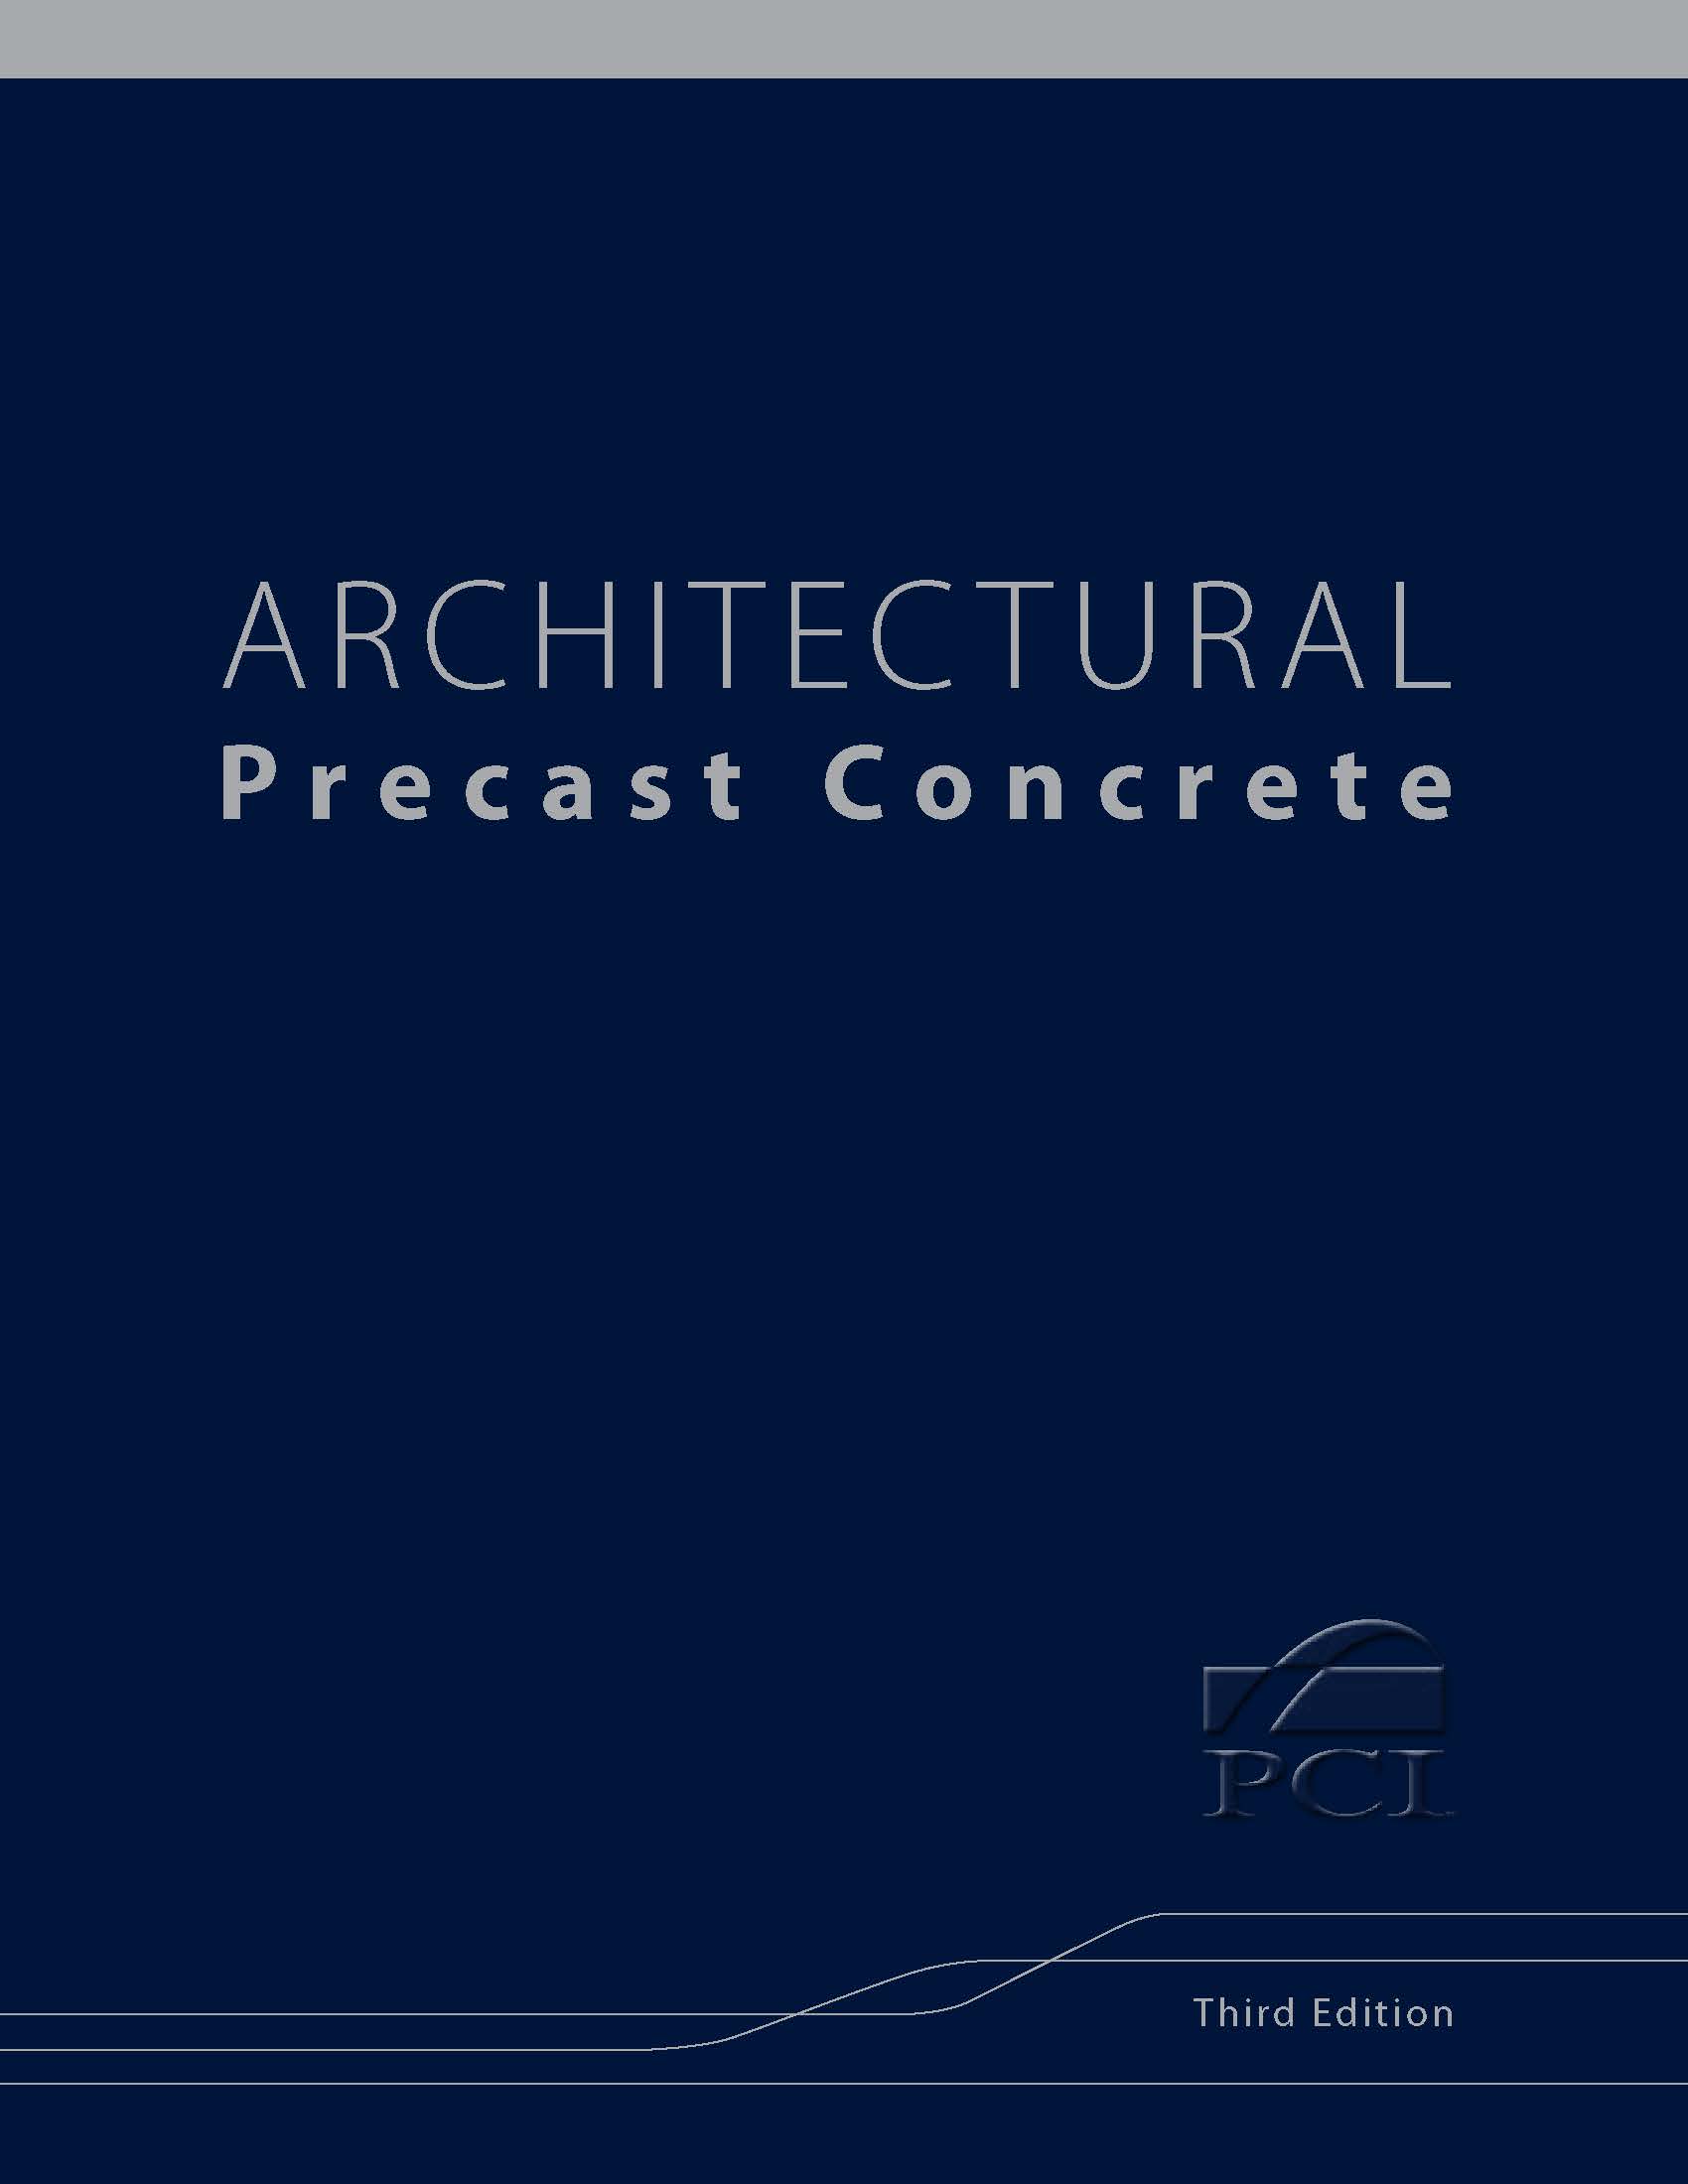 PCI Architectural Precast Concrete Manual